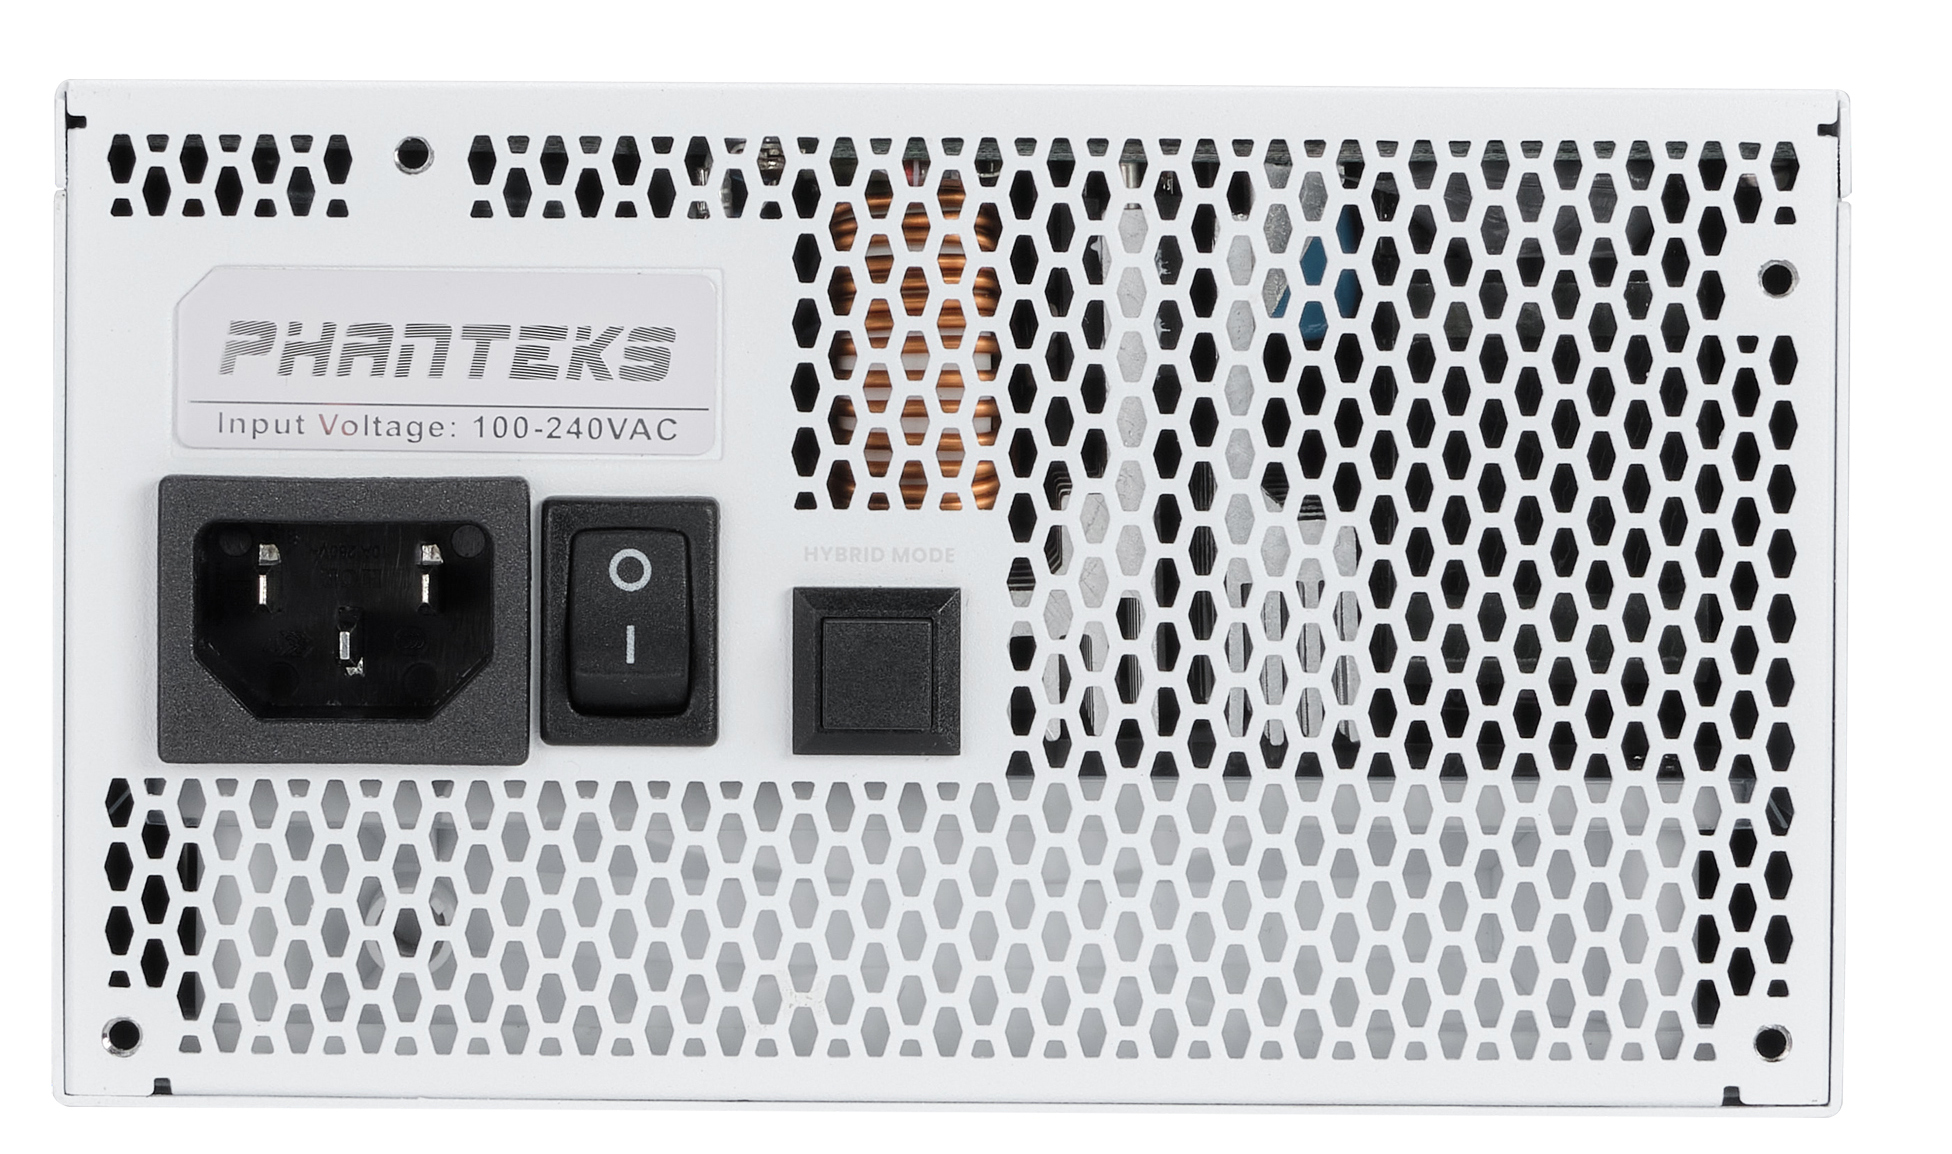 Phanteks - Fonte Modular Phanteks Revolt ATX 3.0 PCIe 5.0 1200W Platinum Branca (Sem Cabos Incluídos)